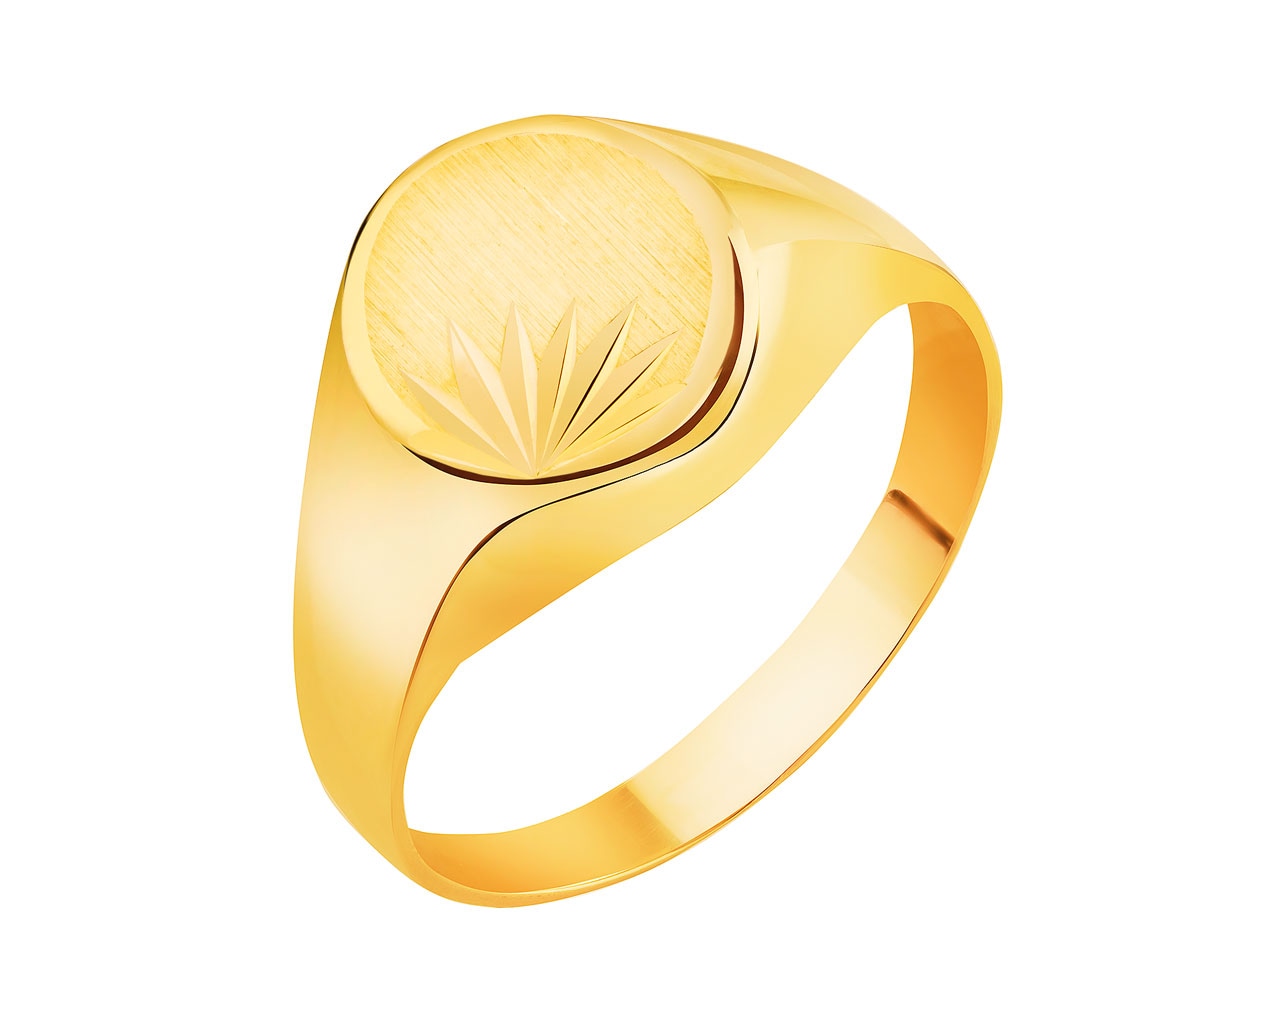 Złoty pierścionek - sygnet - gwiazda